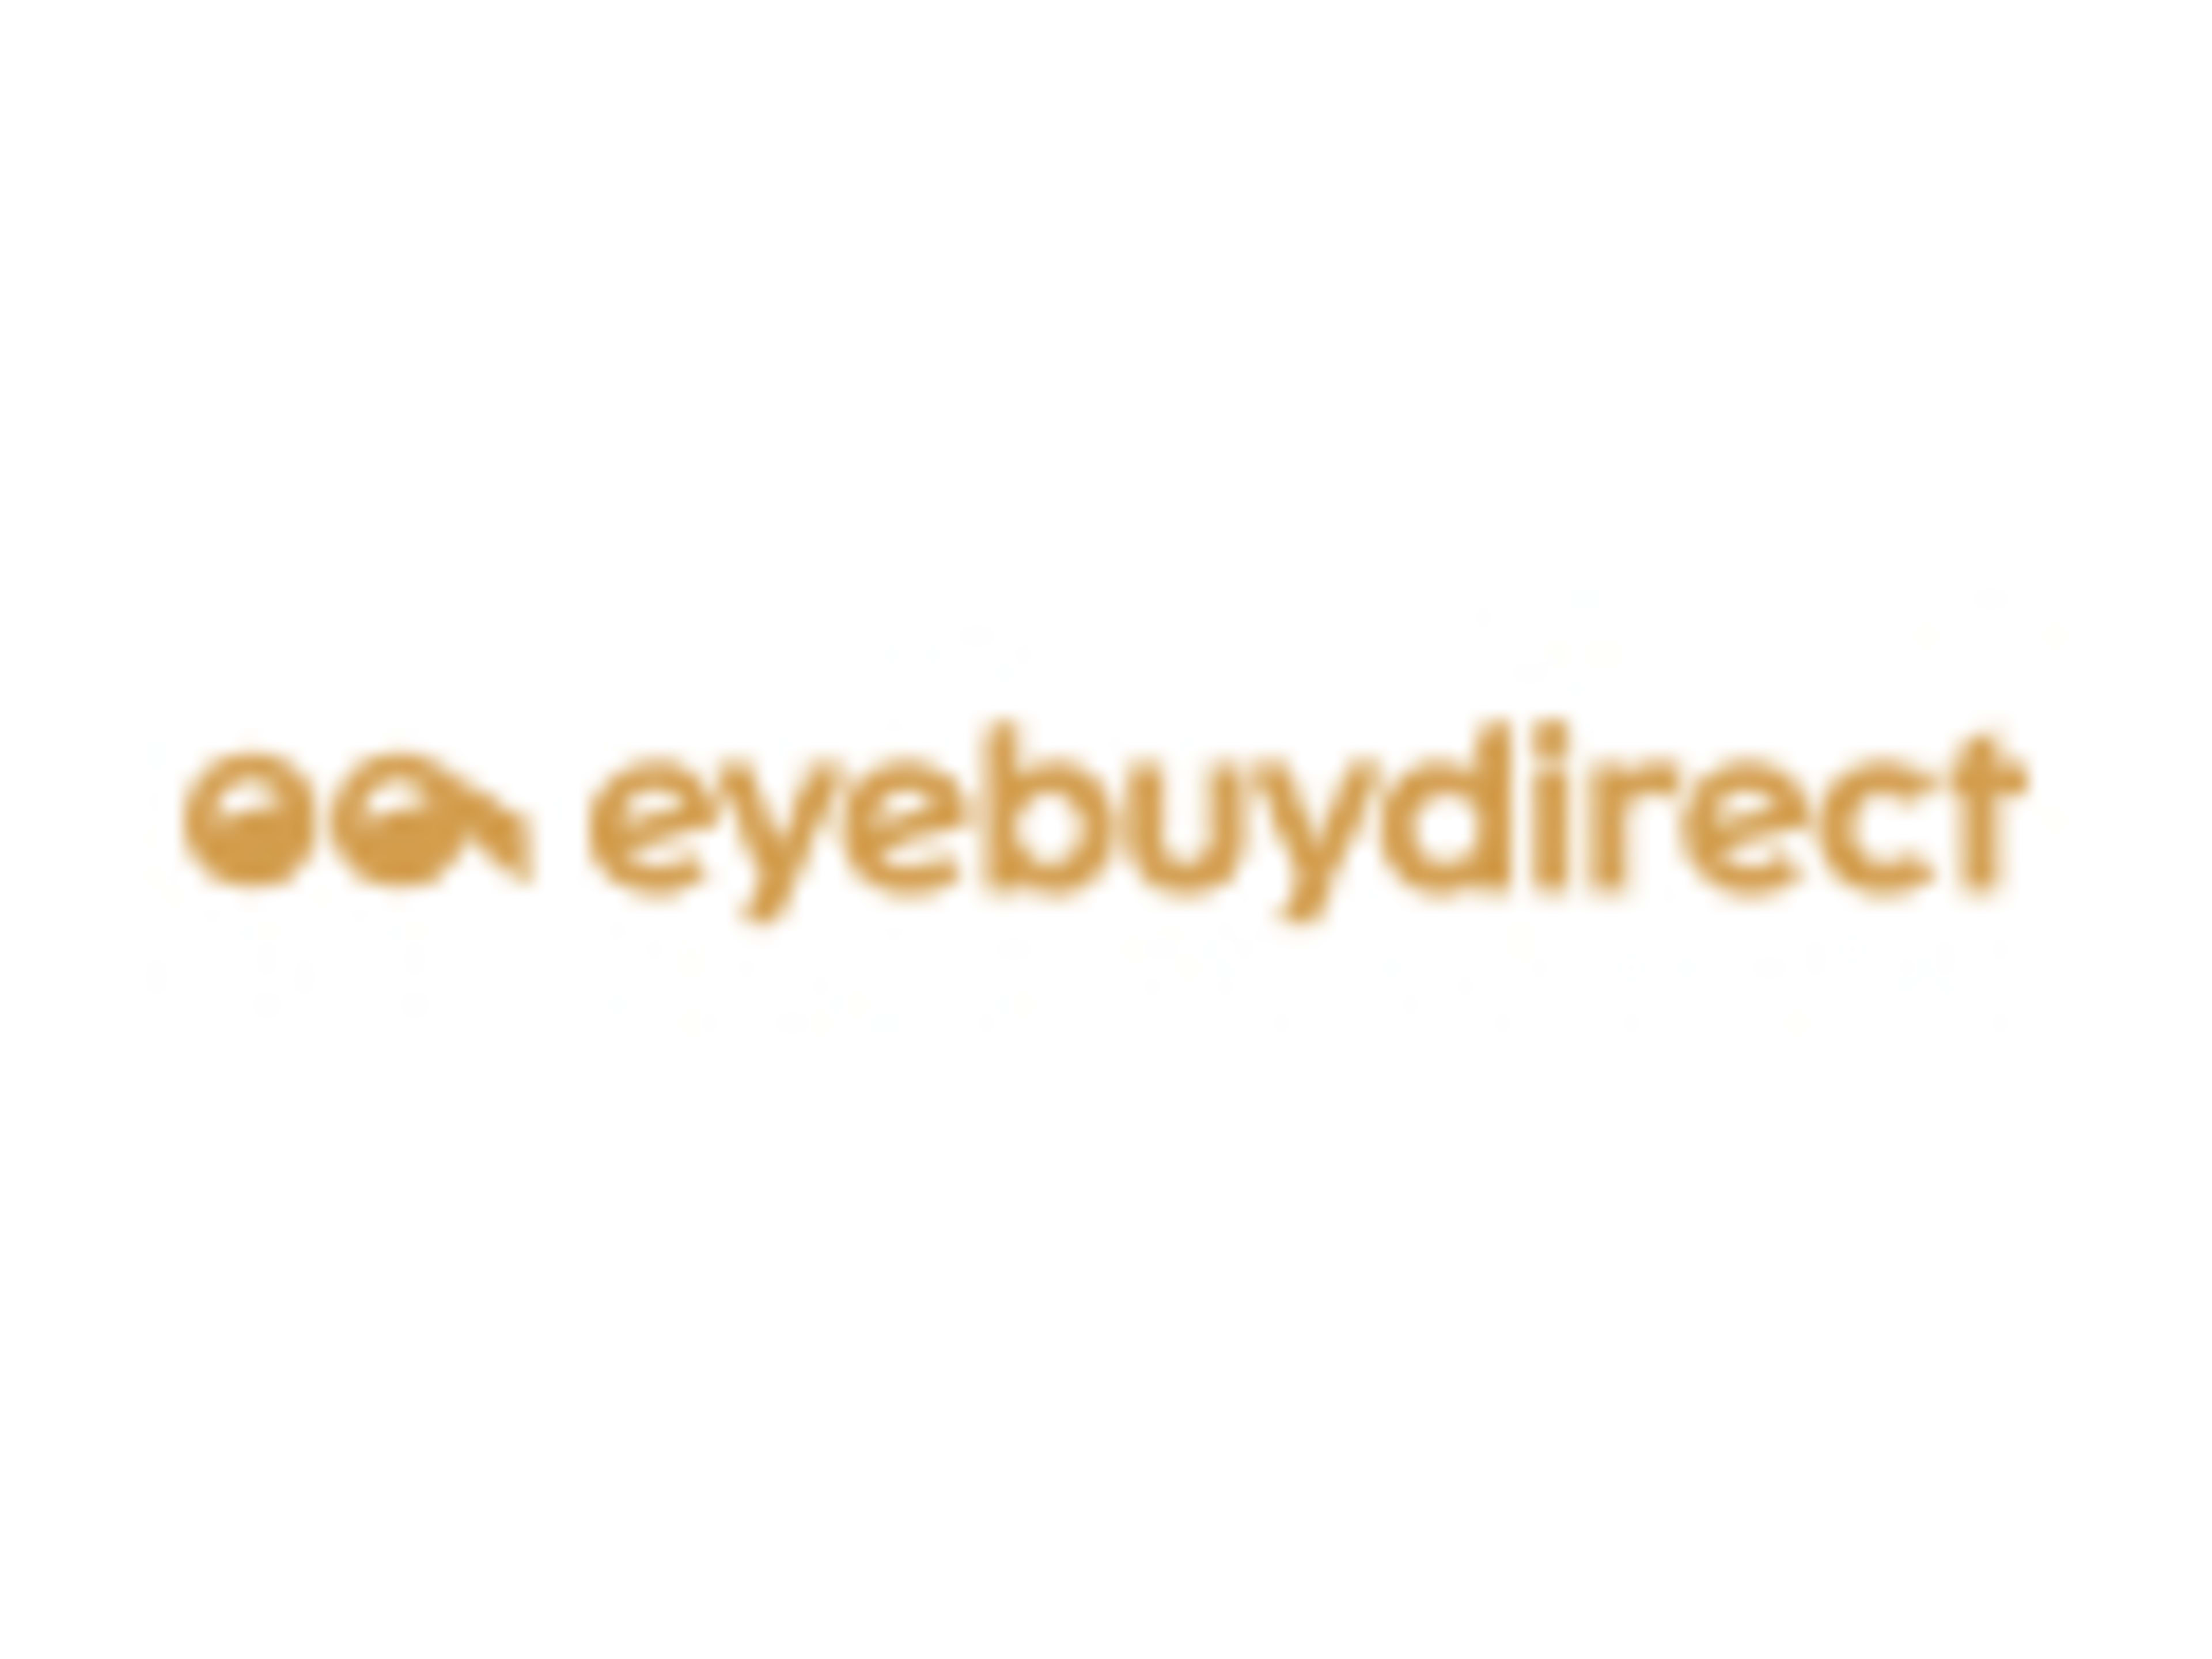 EyeBuyDirectCode